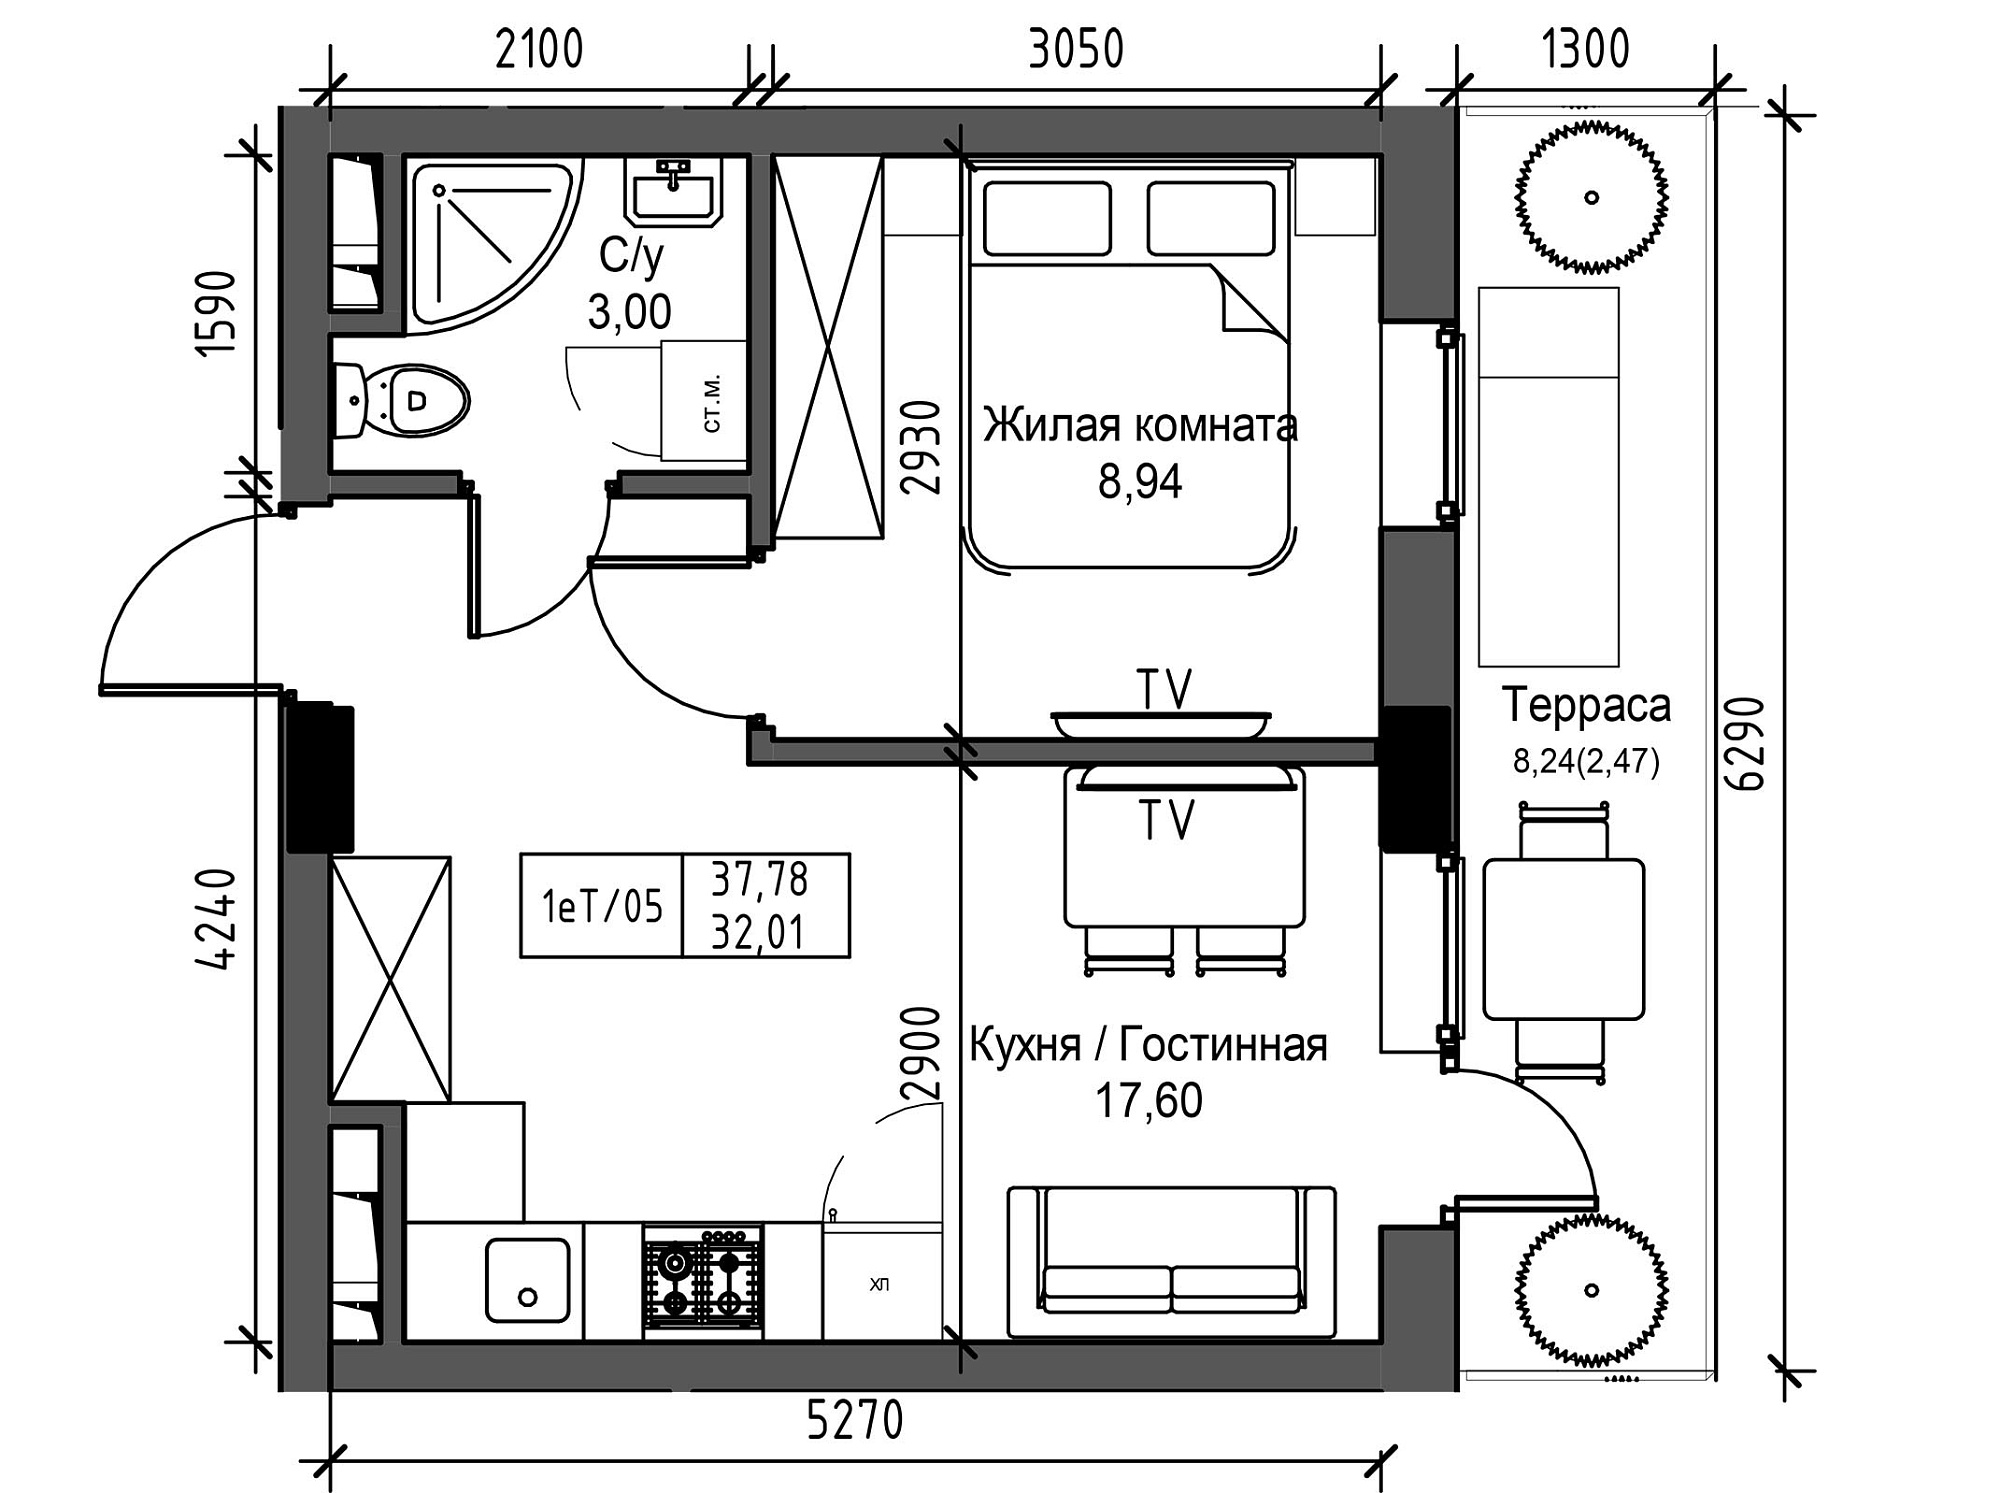 Планировка 1-к квартира площей 32.01м2, UM-003-11/0115.